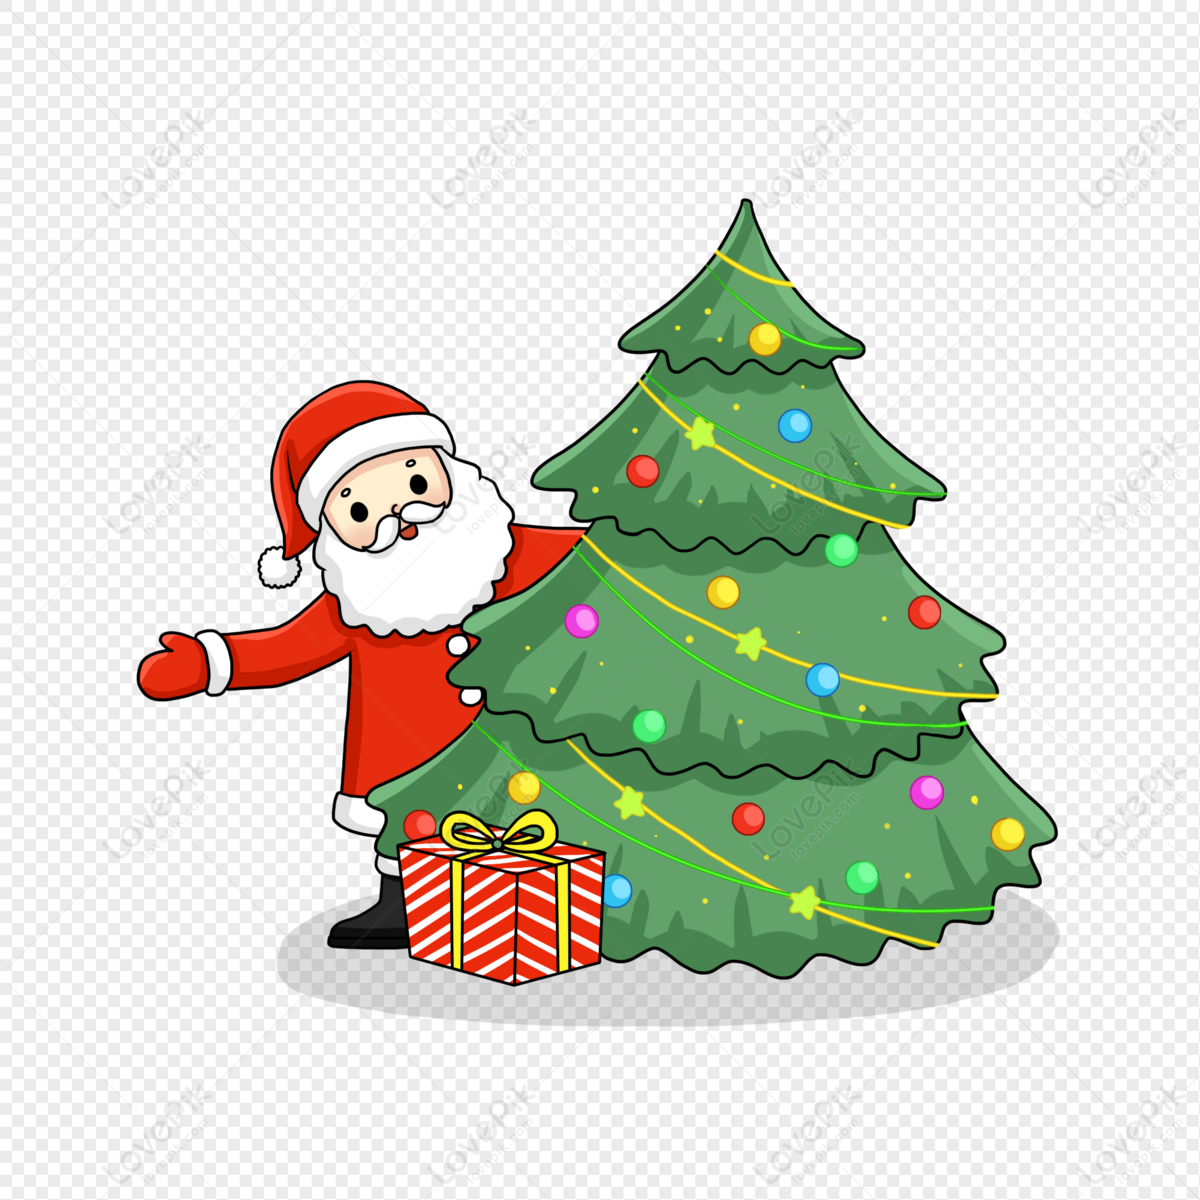 Hãy thưởng thức hình ảnh vẽ cây ông già Noel đang tặng quà cho các em bé dưới chân cây thông. Những chi tiết nhỏ như chiếc ruy băng đỏ và chiếc mũ đỏ làm cho hình ảnh trở nên sống động và đầy màu sắc. Bạn sẽ cảm nhận được không khí Giáng Sinh chắc chắn sẽ khiến bạn cảm thấy ấm áp.